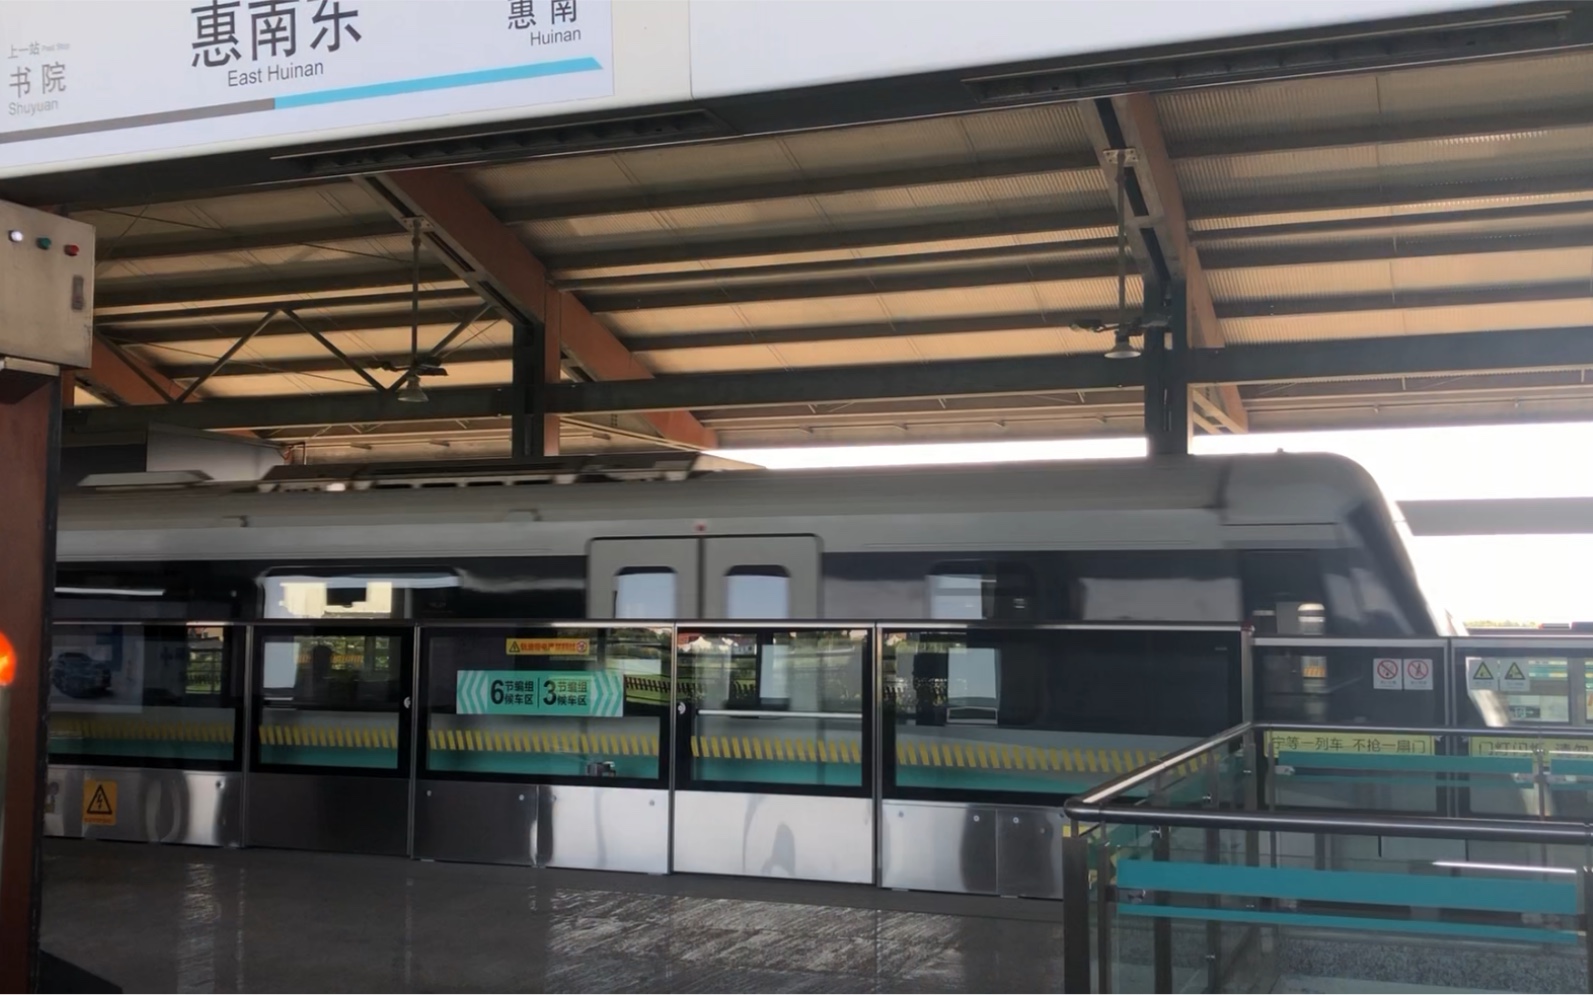 16号线惠南站图片